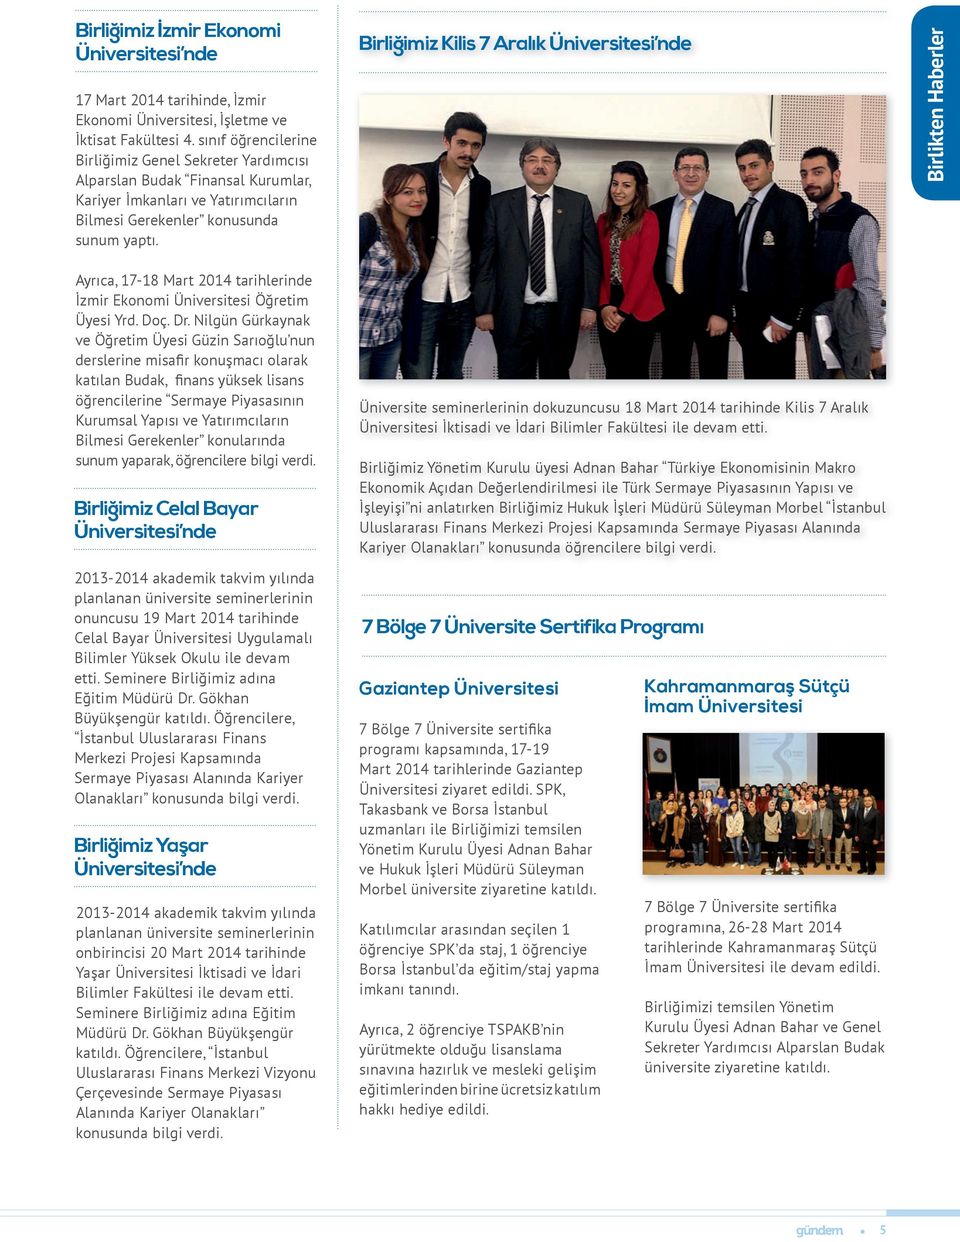 Birliğimiz Kilis 7 Aralık Üniversitesi nde Birlikten Haberler Ayrıca, 17-18 Mart 2014 tarihlerinde İzmir Ekonomi Üniversitesi Öğretim Üyesi Yrd. Doç. Dr.